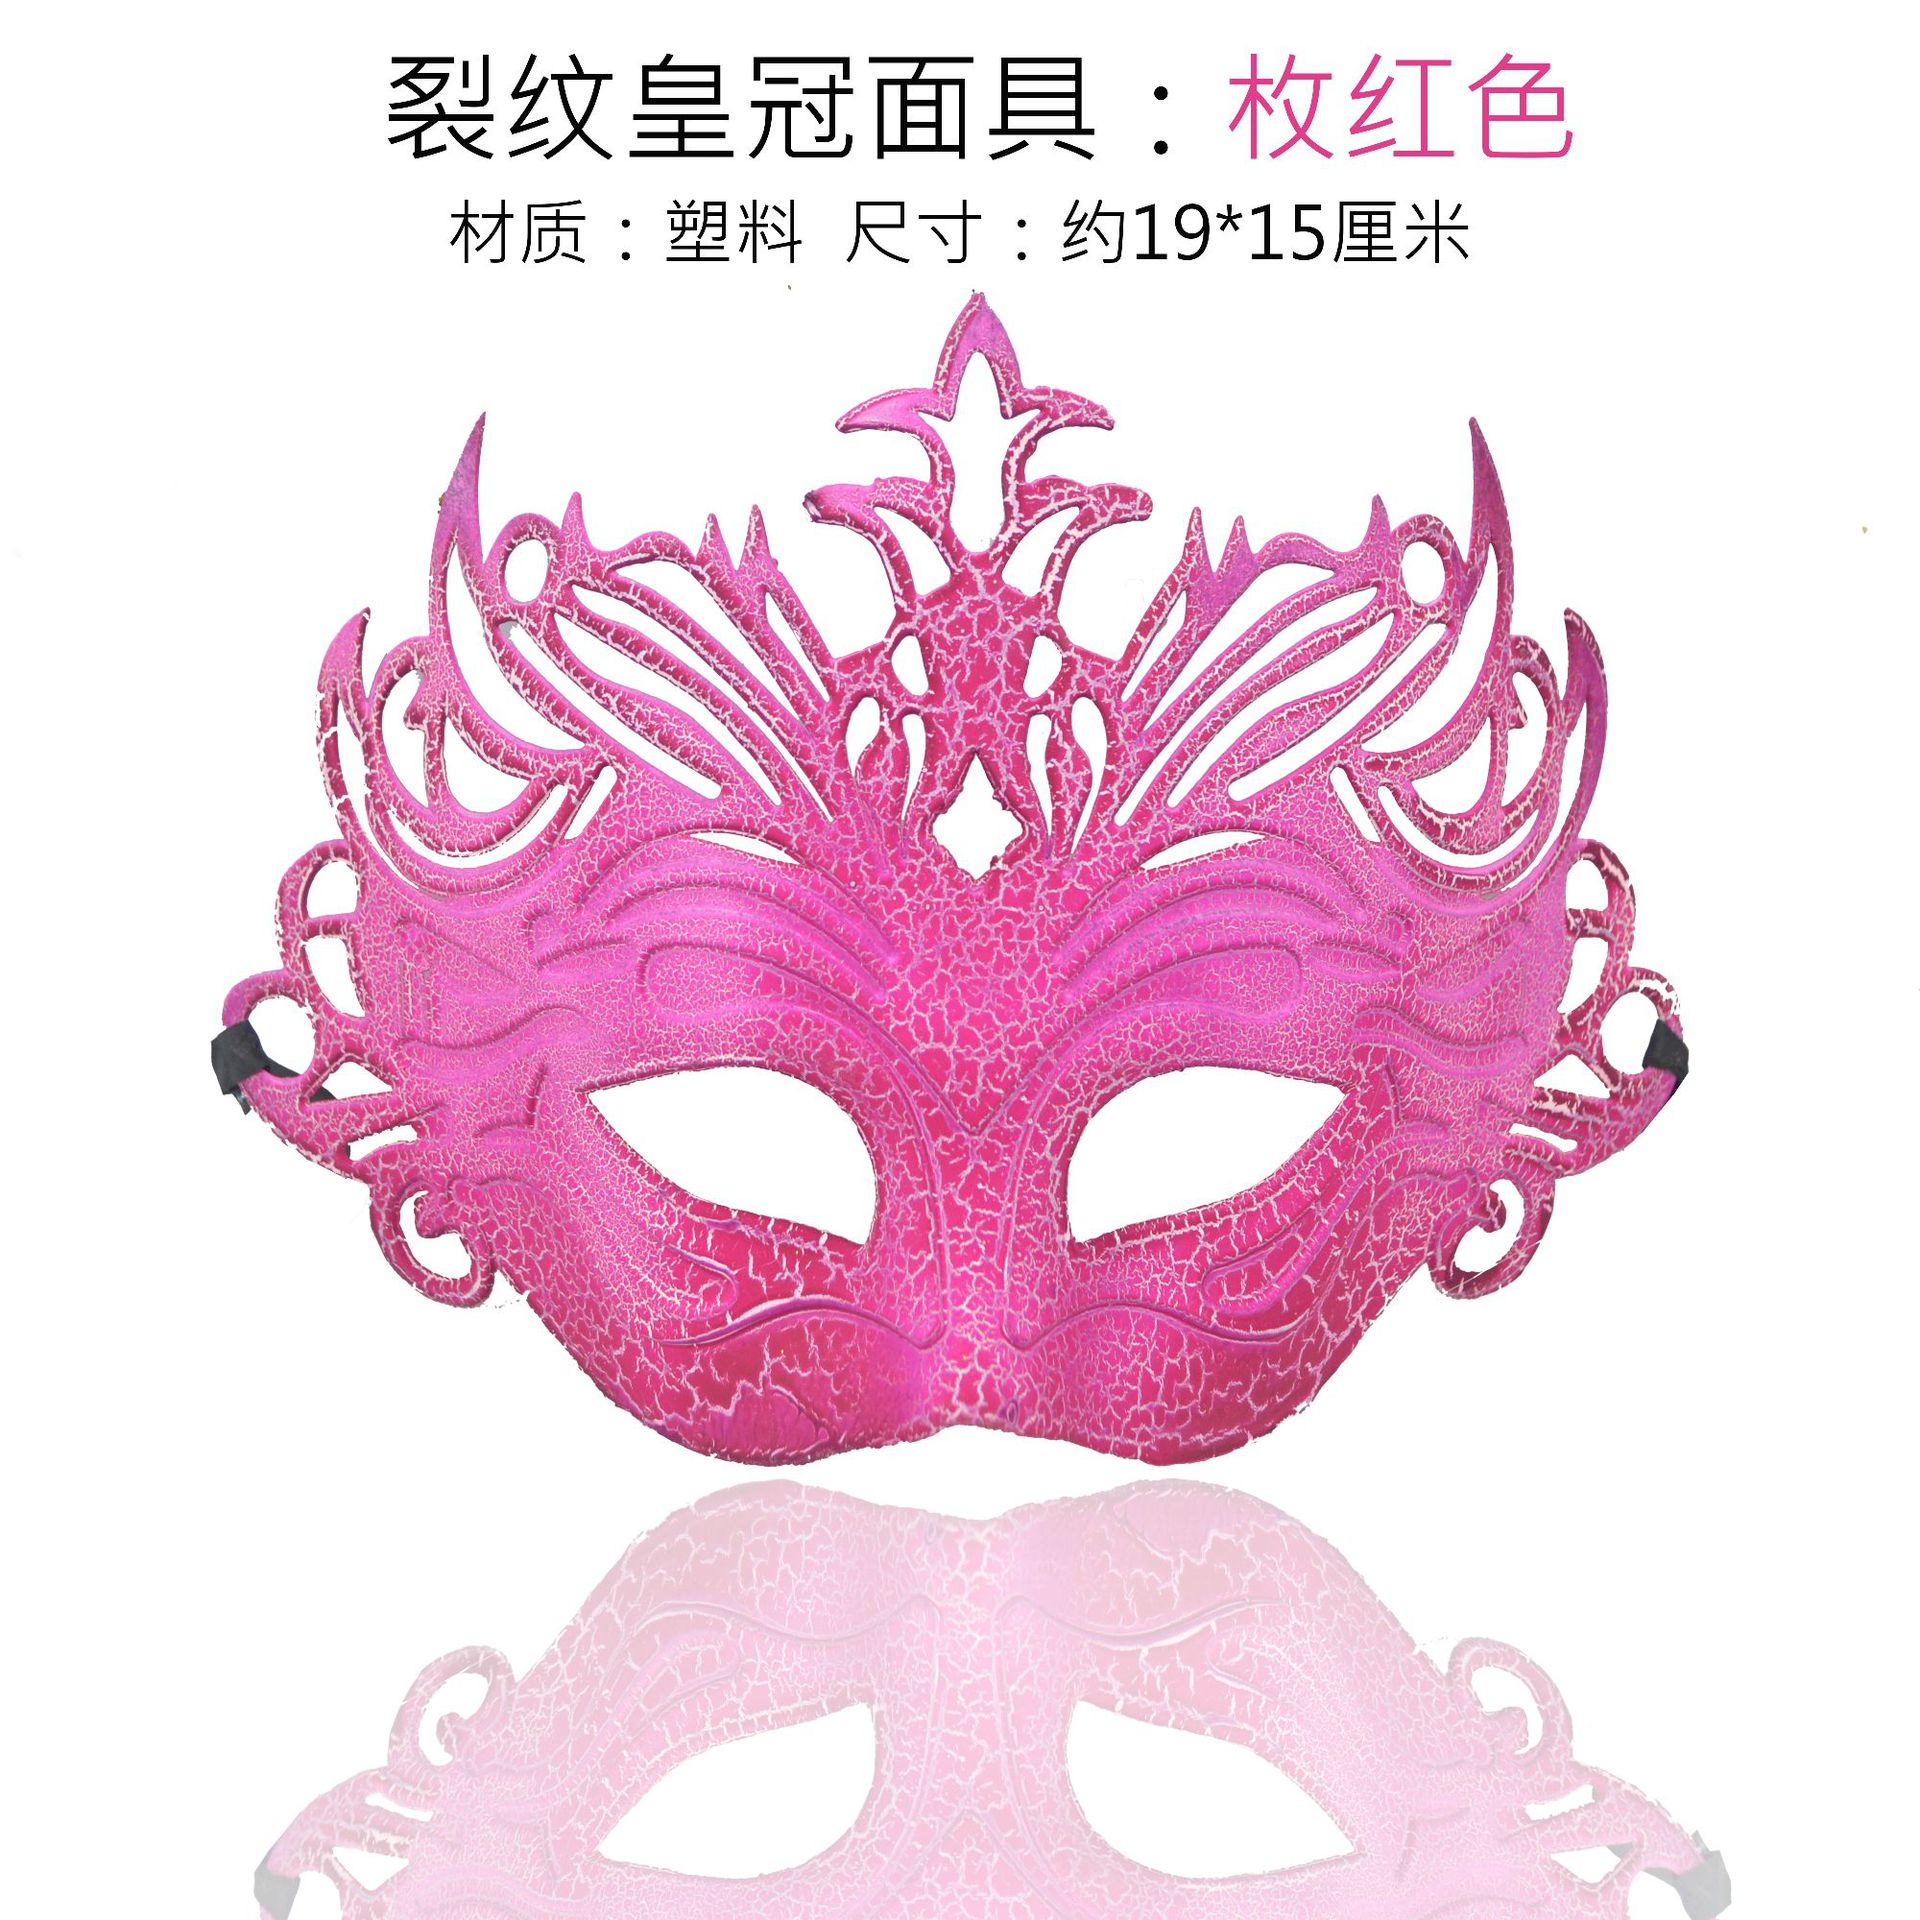 厂家直销万圣节意大利花边面具威尼斯公主舞会眼罩皮革羽毛面具-阿里巴巴